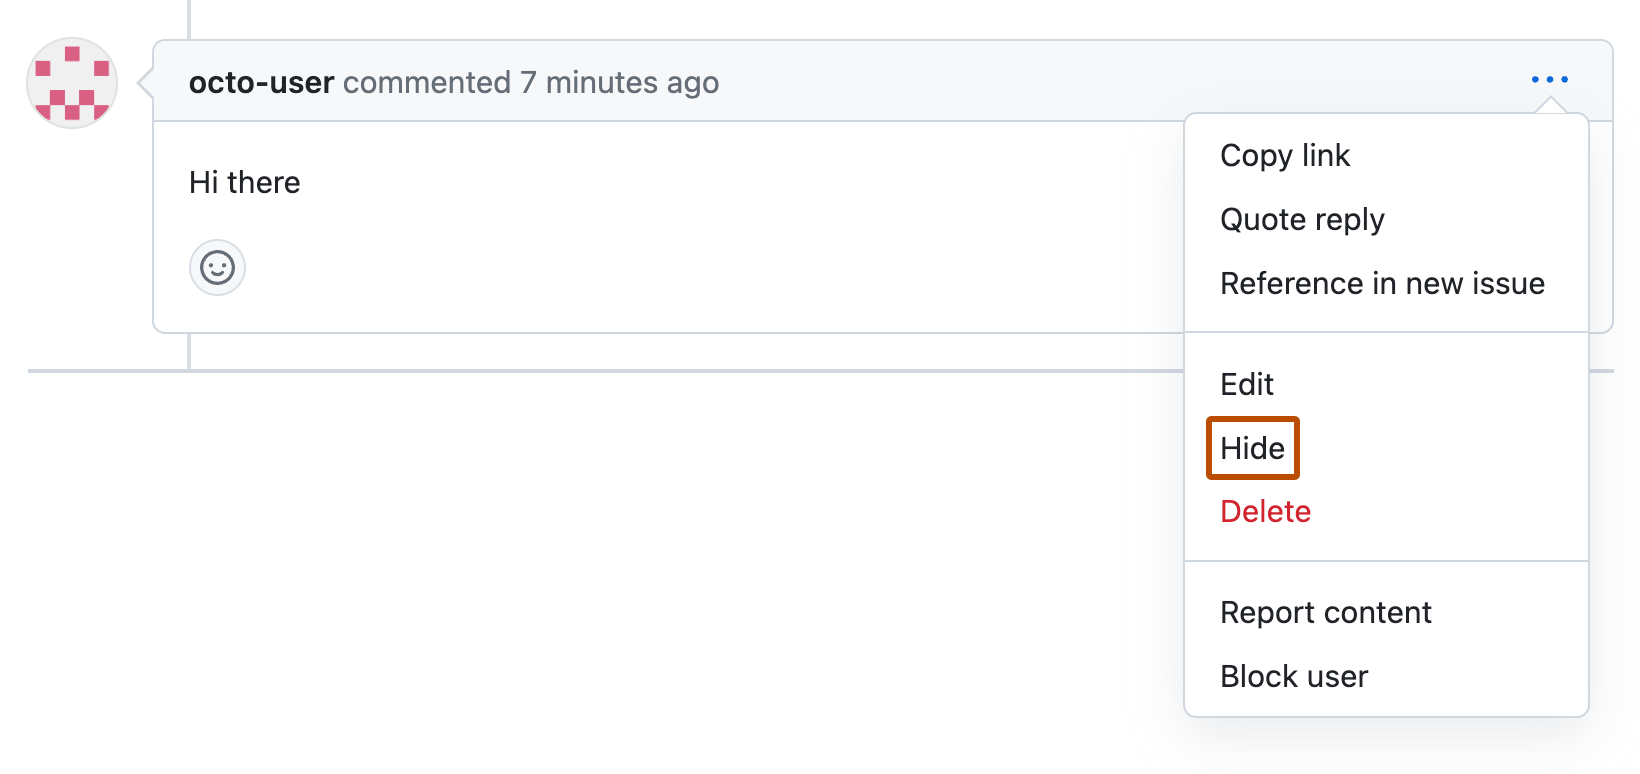 Captura de pantalla de un comentario de solicitud de cambios de octo-user. Debajo de un icono de tres puntos horizontales, se expande un menú desplegable y aparece la opción "Ocultar" con un contorno naranja.